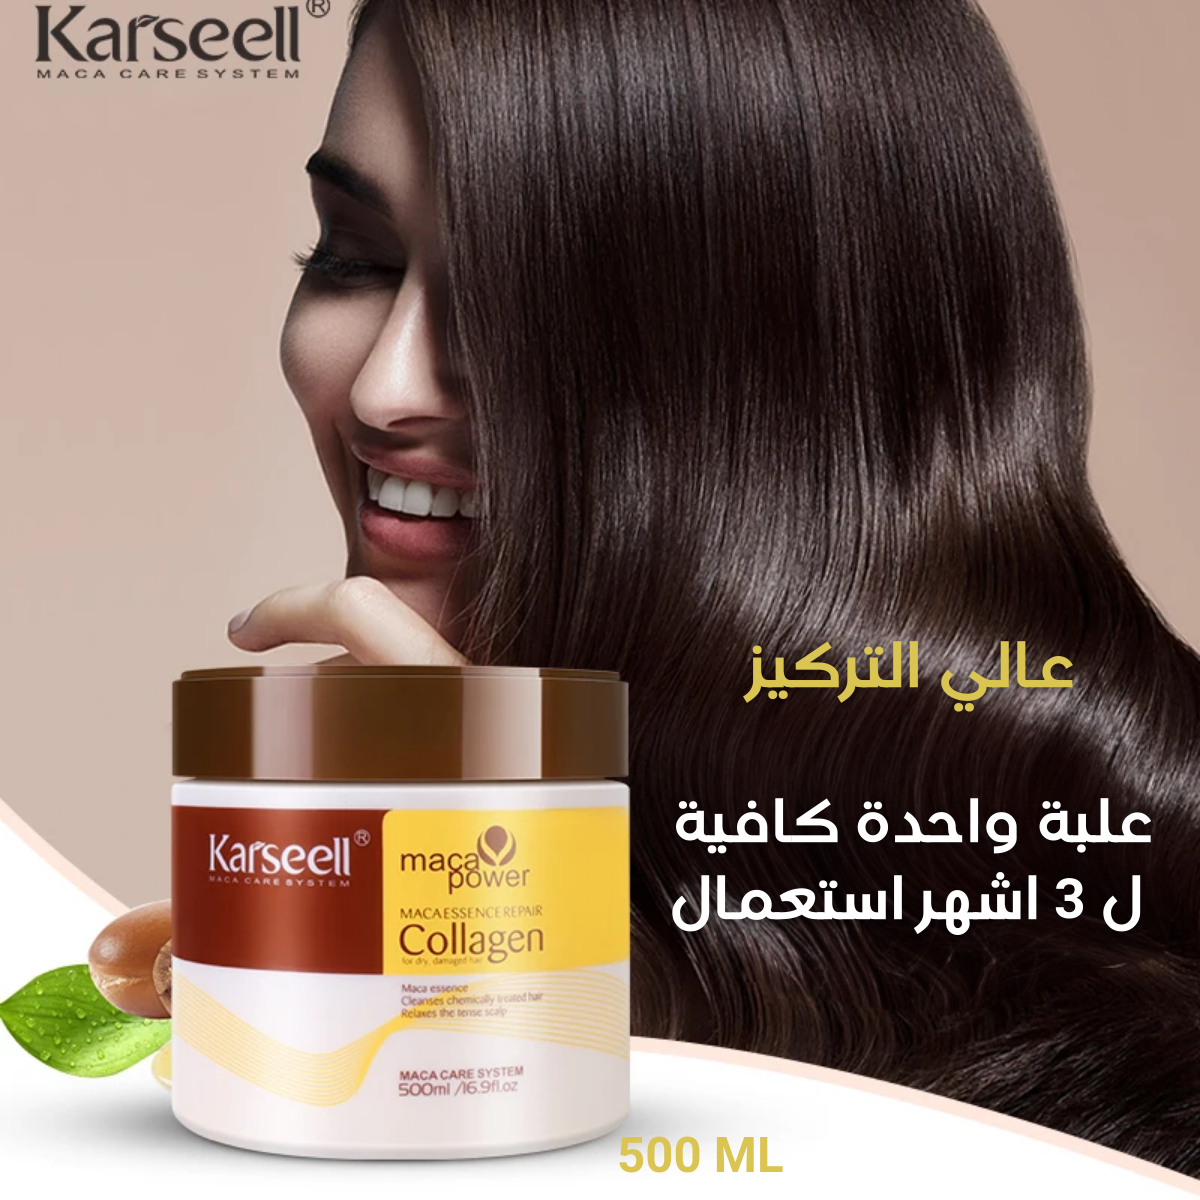 KARSEELL Collagen Hair Moisturizer